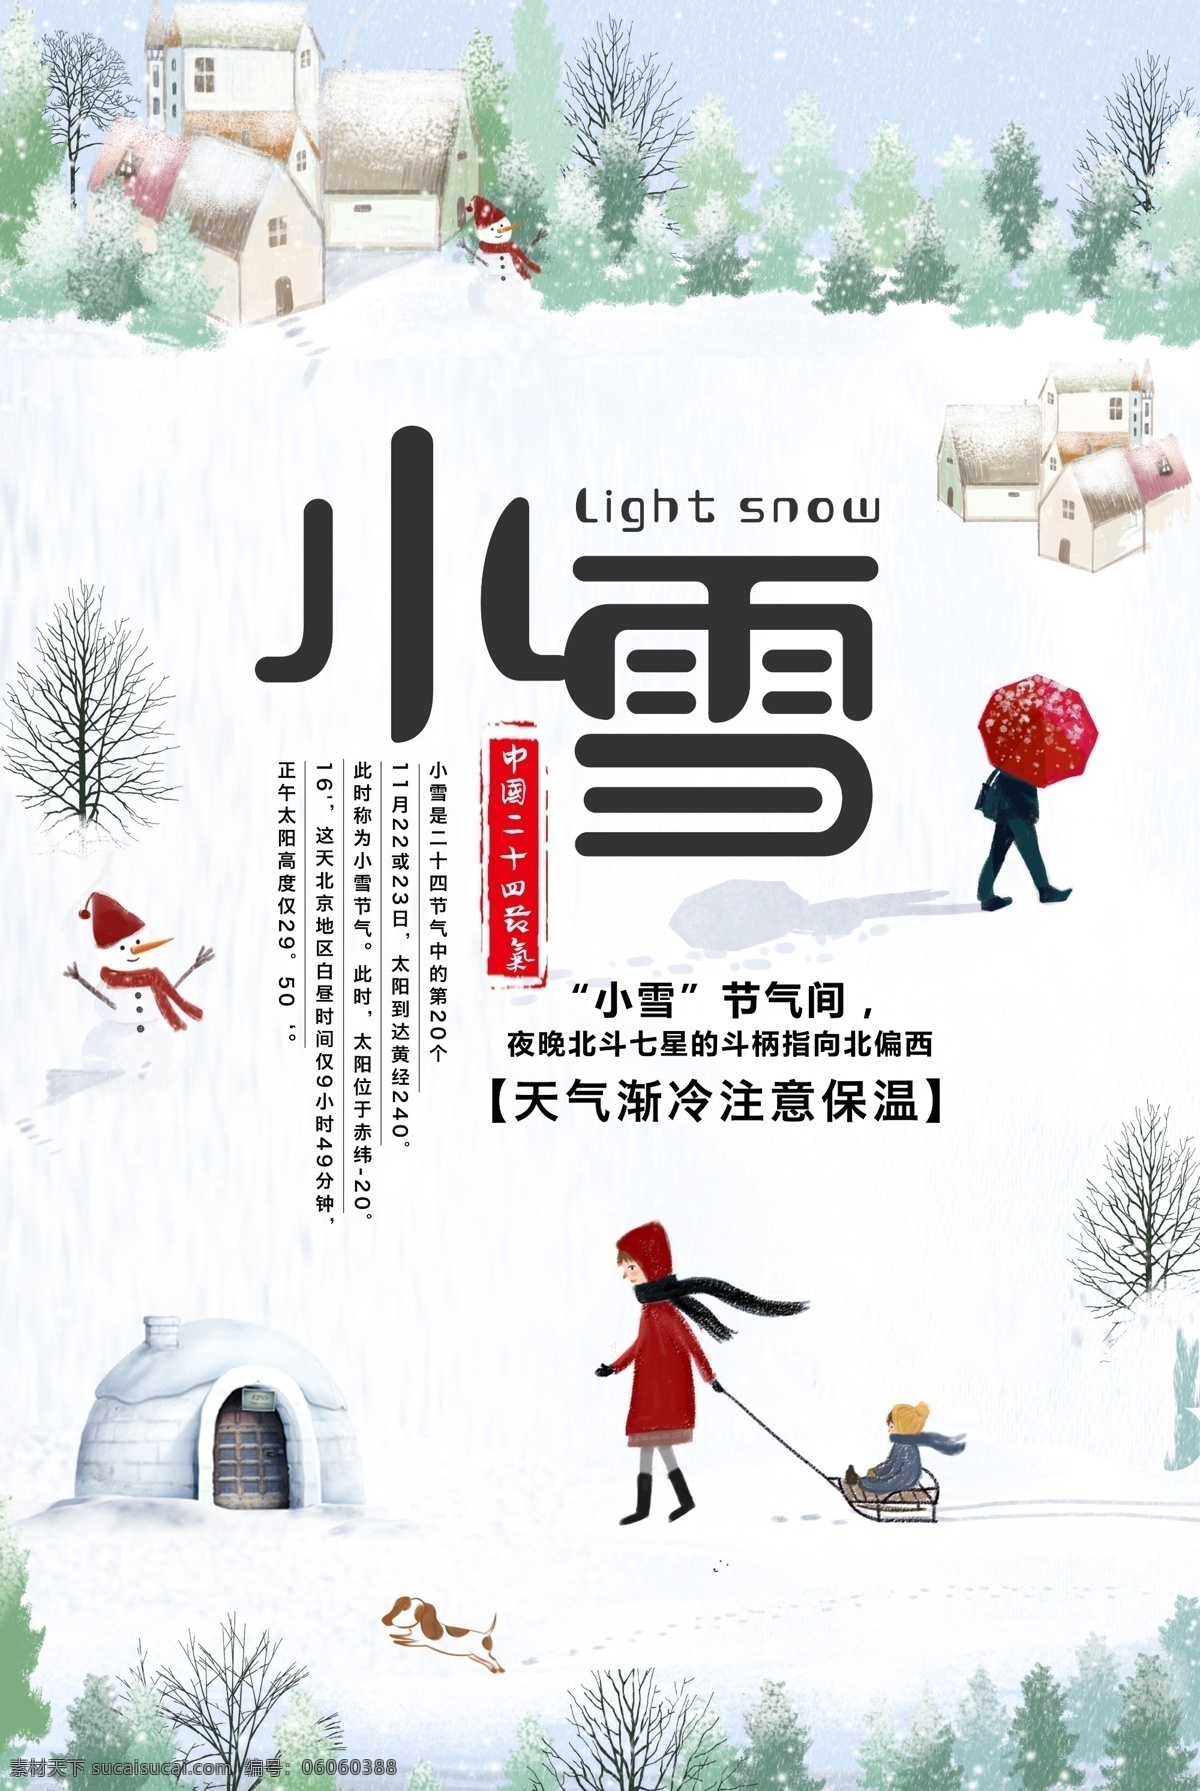 中国 传统 节气 小雪 海报 平面素材 免费素材 二十四节气 中国传统 节气小雪 小雪海报 传统中国